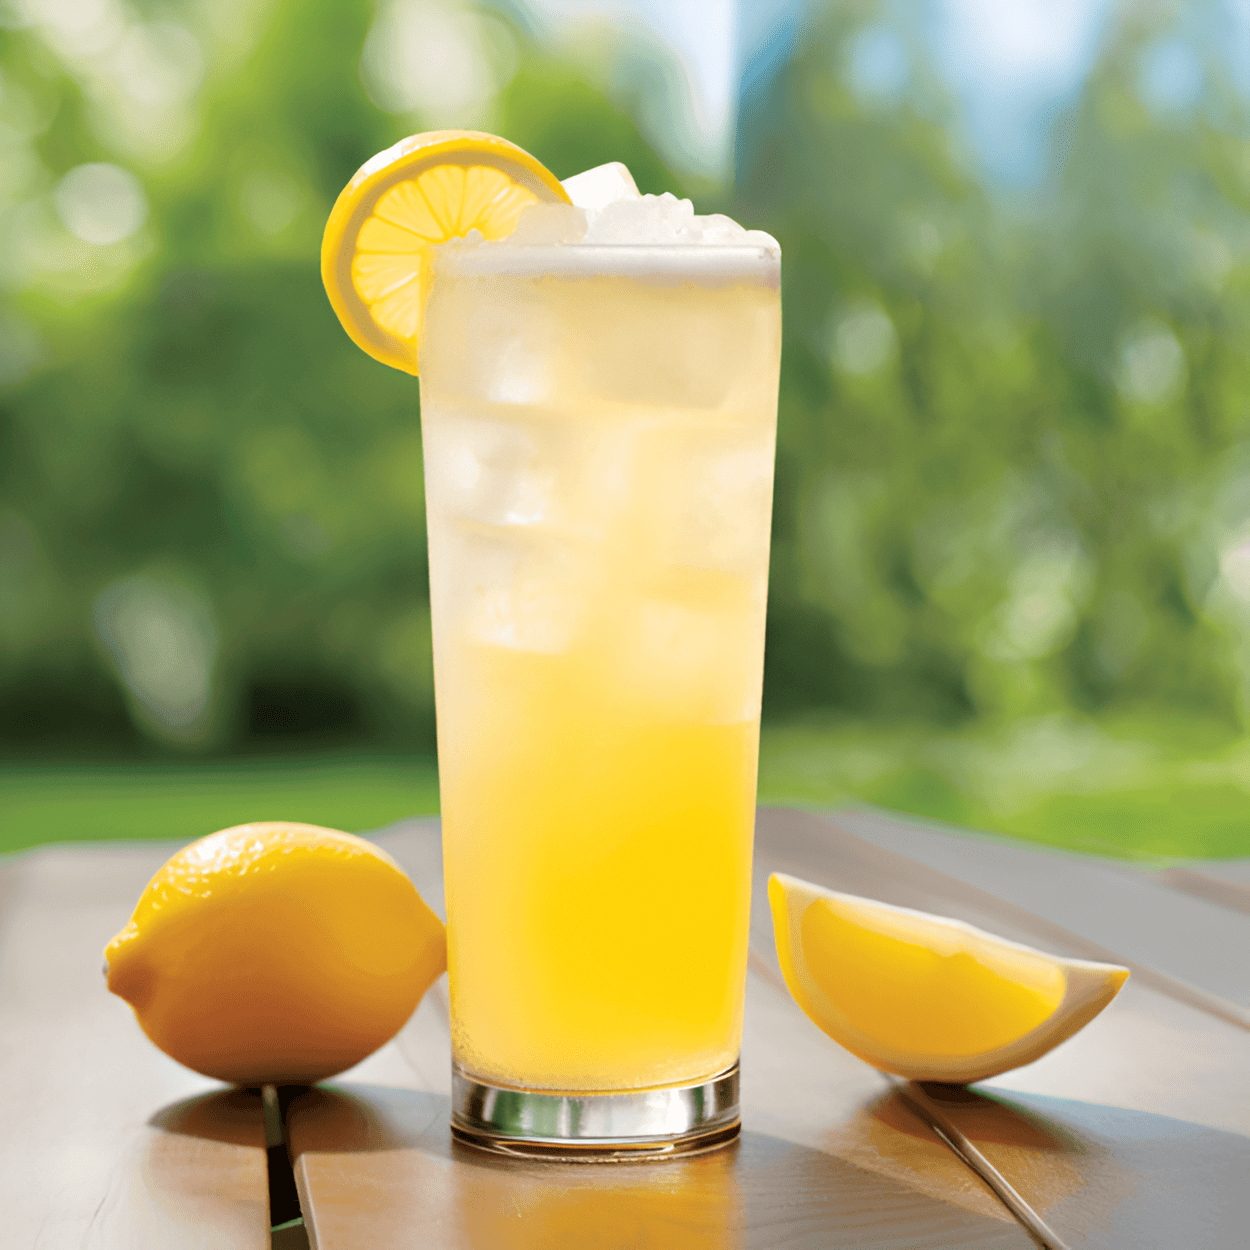 El Radler tiene un sabor ligero y refrescante. Es un poco dulce debido a la soda de limón, con un ligero amargor de la cerveza. Las notas cítricas del limón lo hacen ácido y picante, mientras que la carbonatación le da un agradable burbujeo.